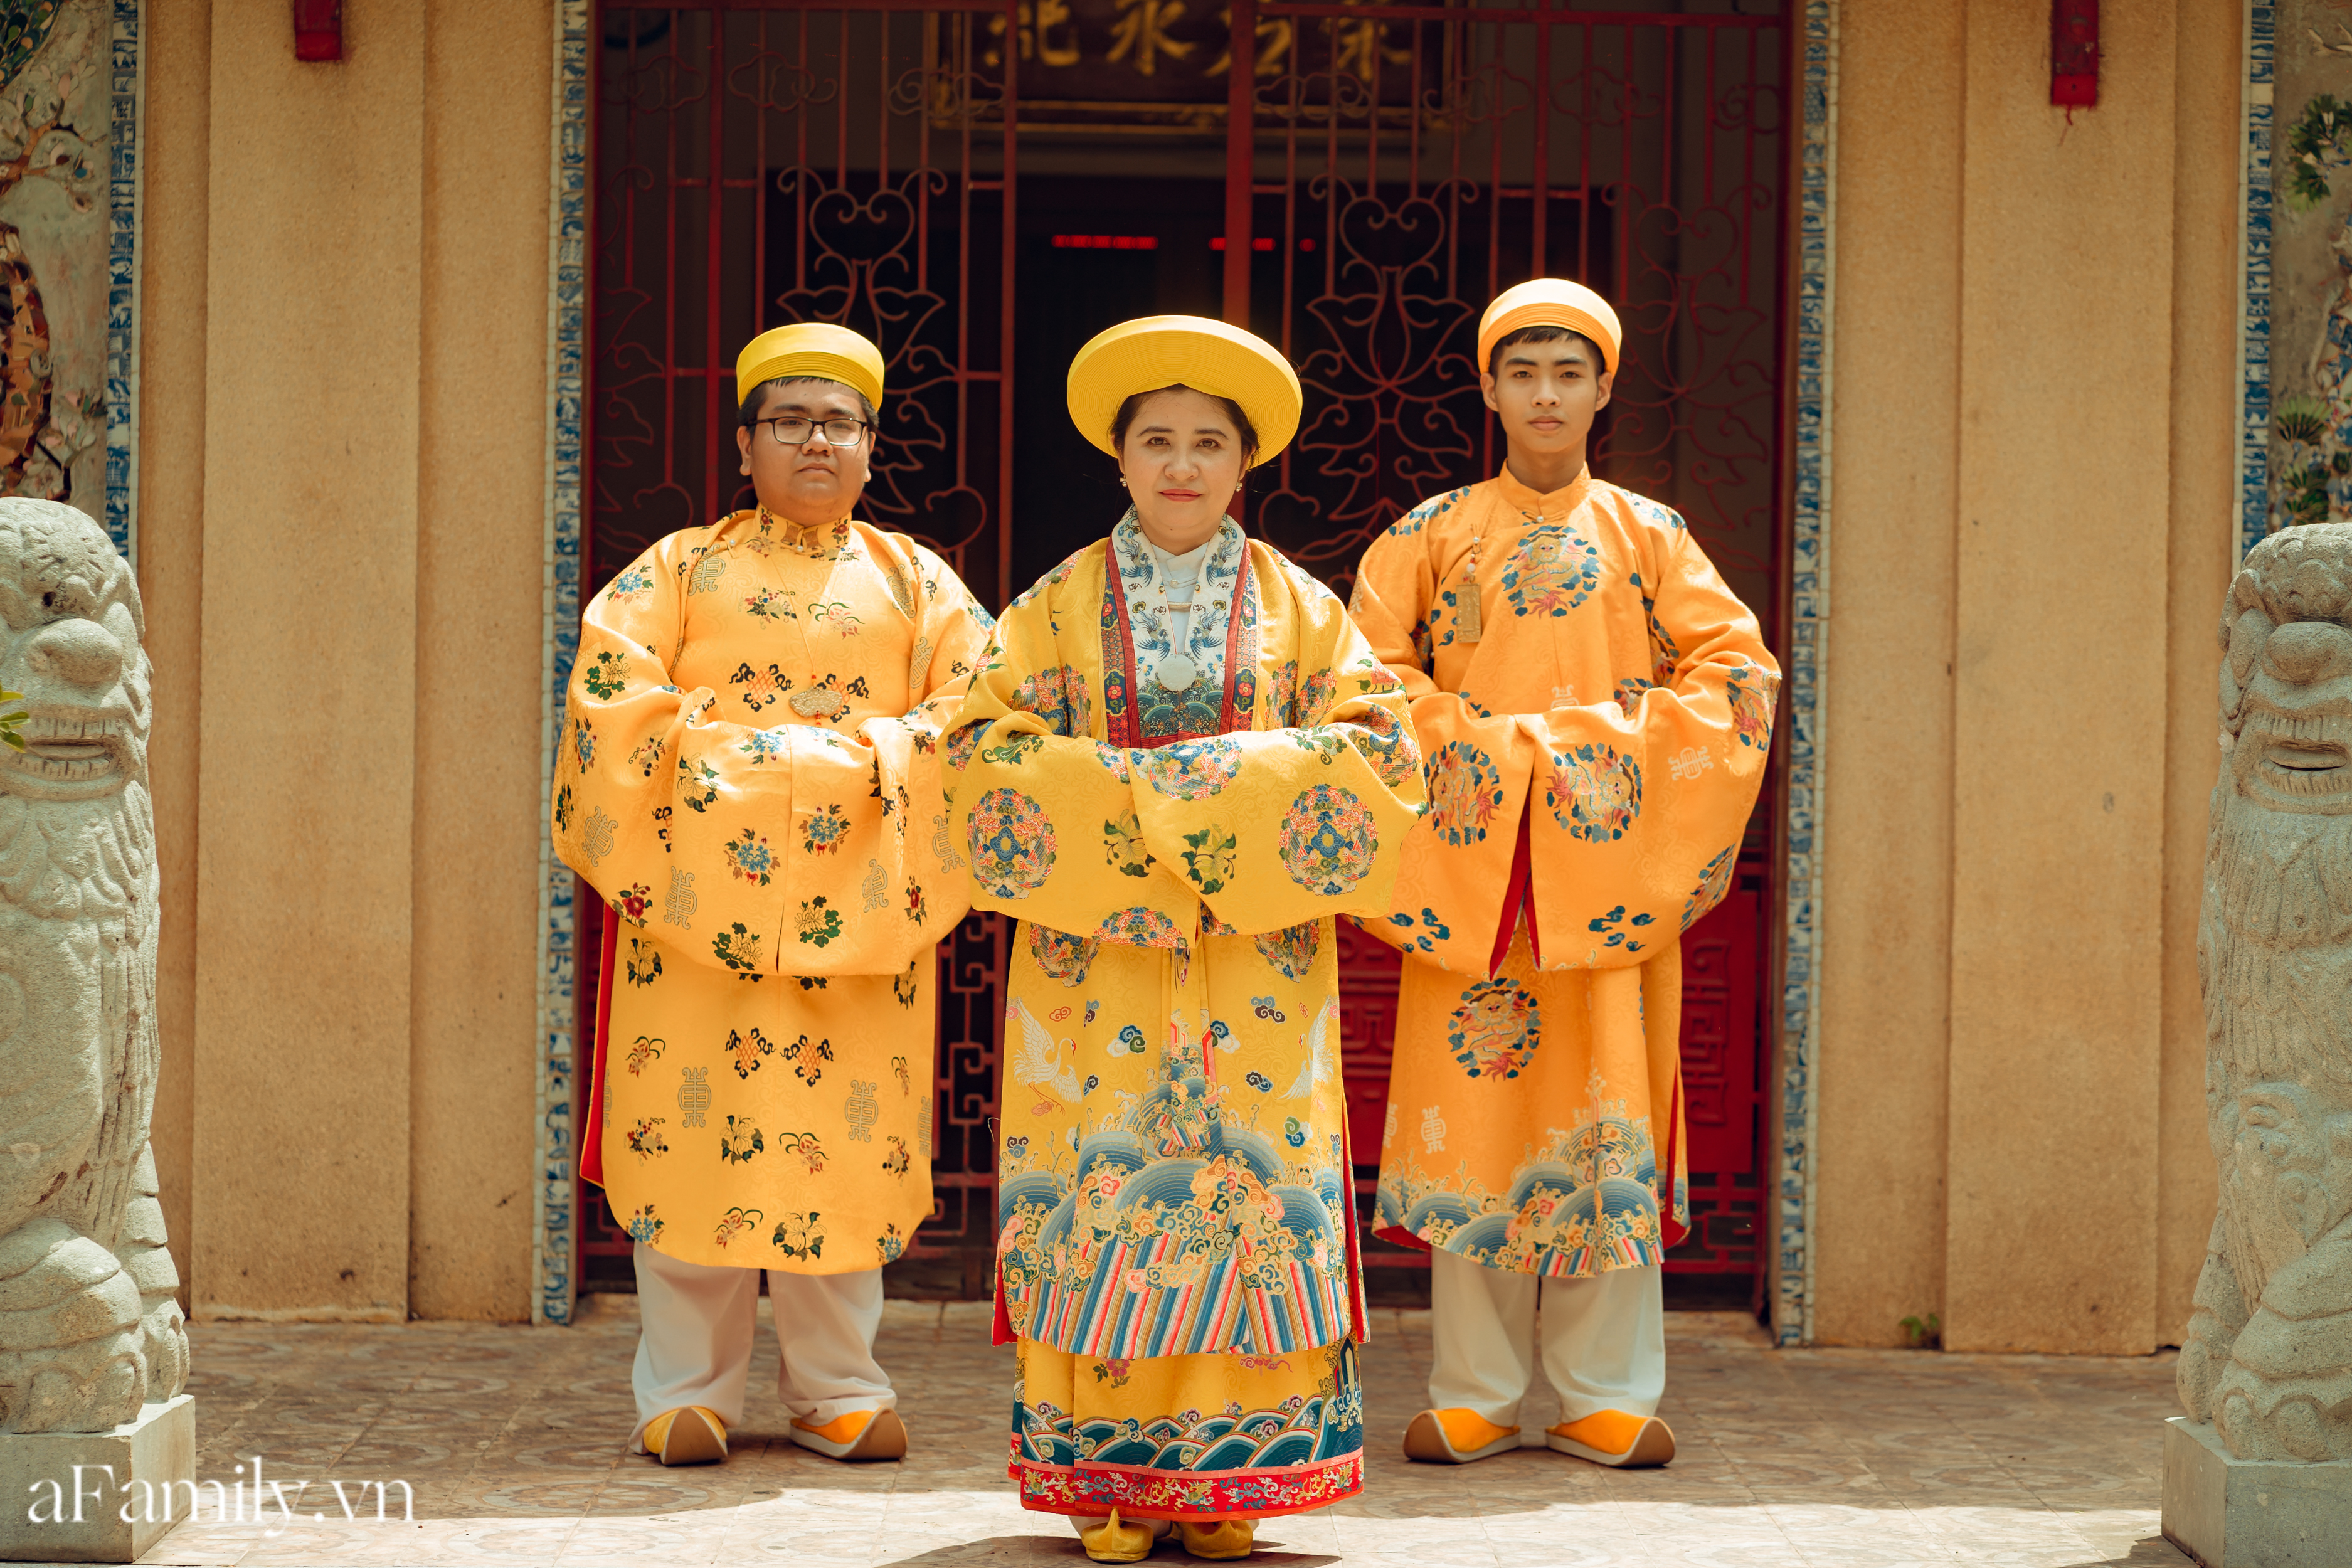 Nhóm học sinh cấp 3 tìm về nét đẹp truyền thống, diện nguyên dàn cổ phục Việt chụp ảnh kỷ yếu, nhanh chóng thành tạo 